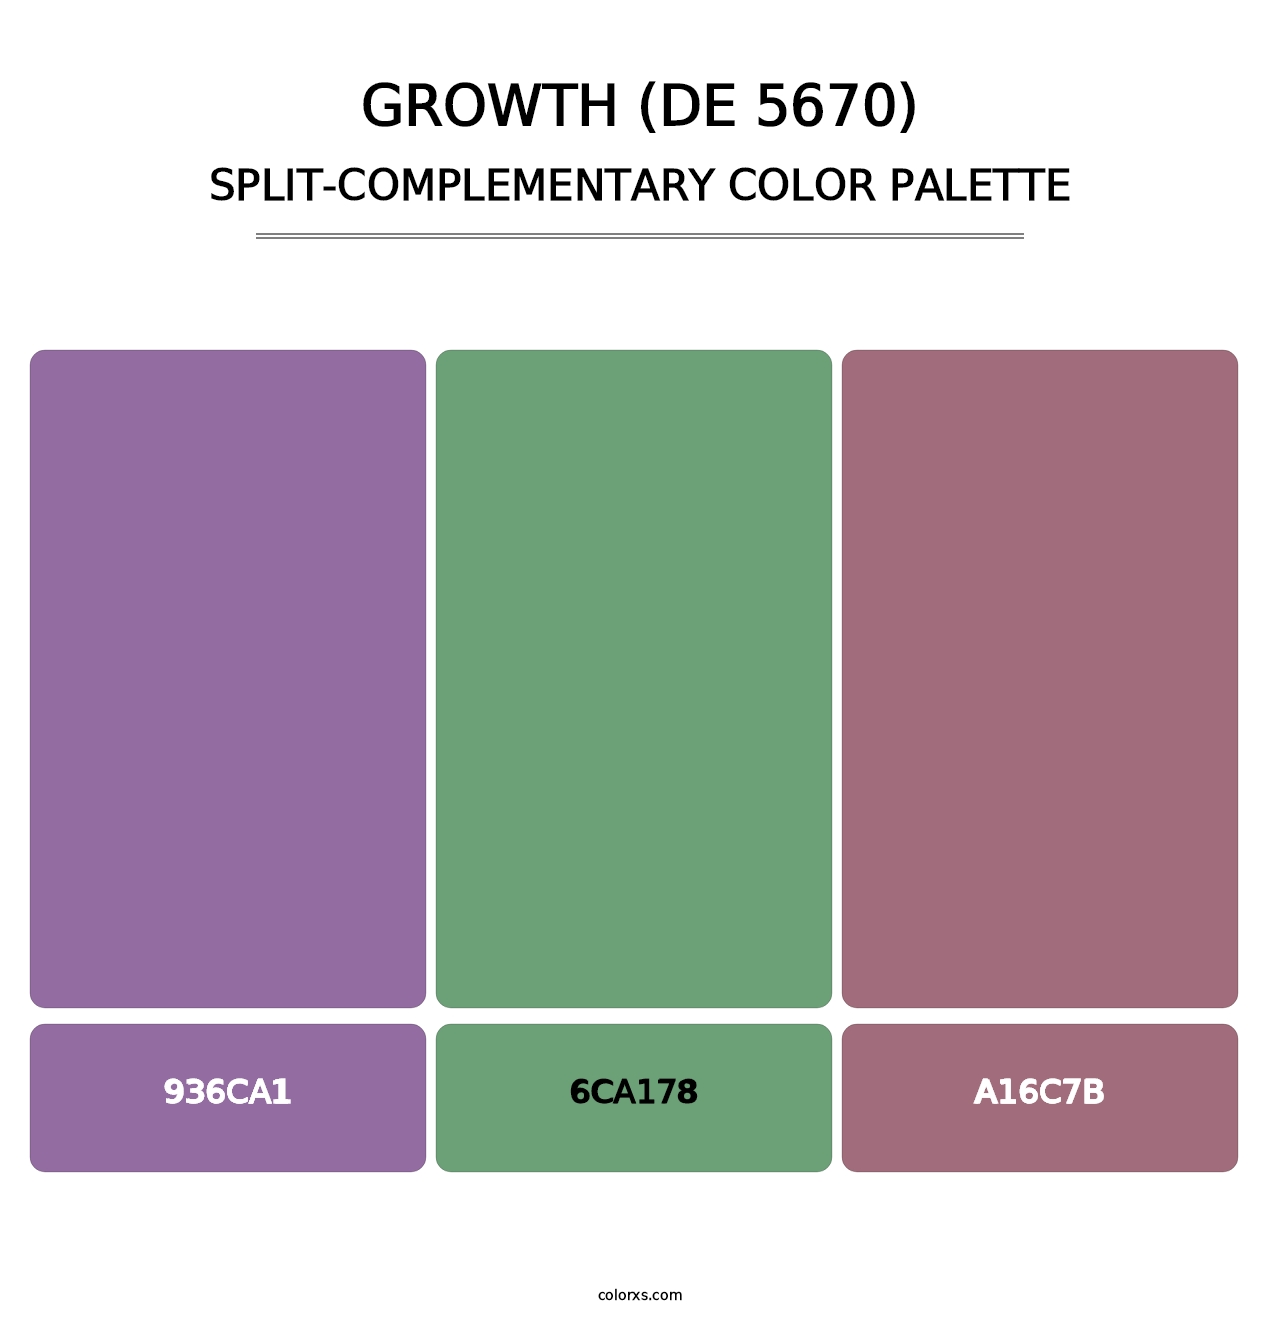 Growth (DE 5670) - Split-Complementary Color Palette